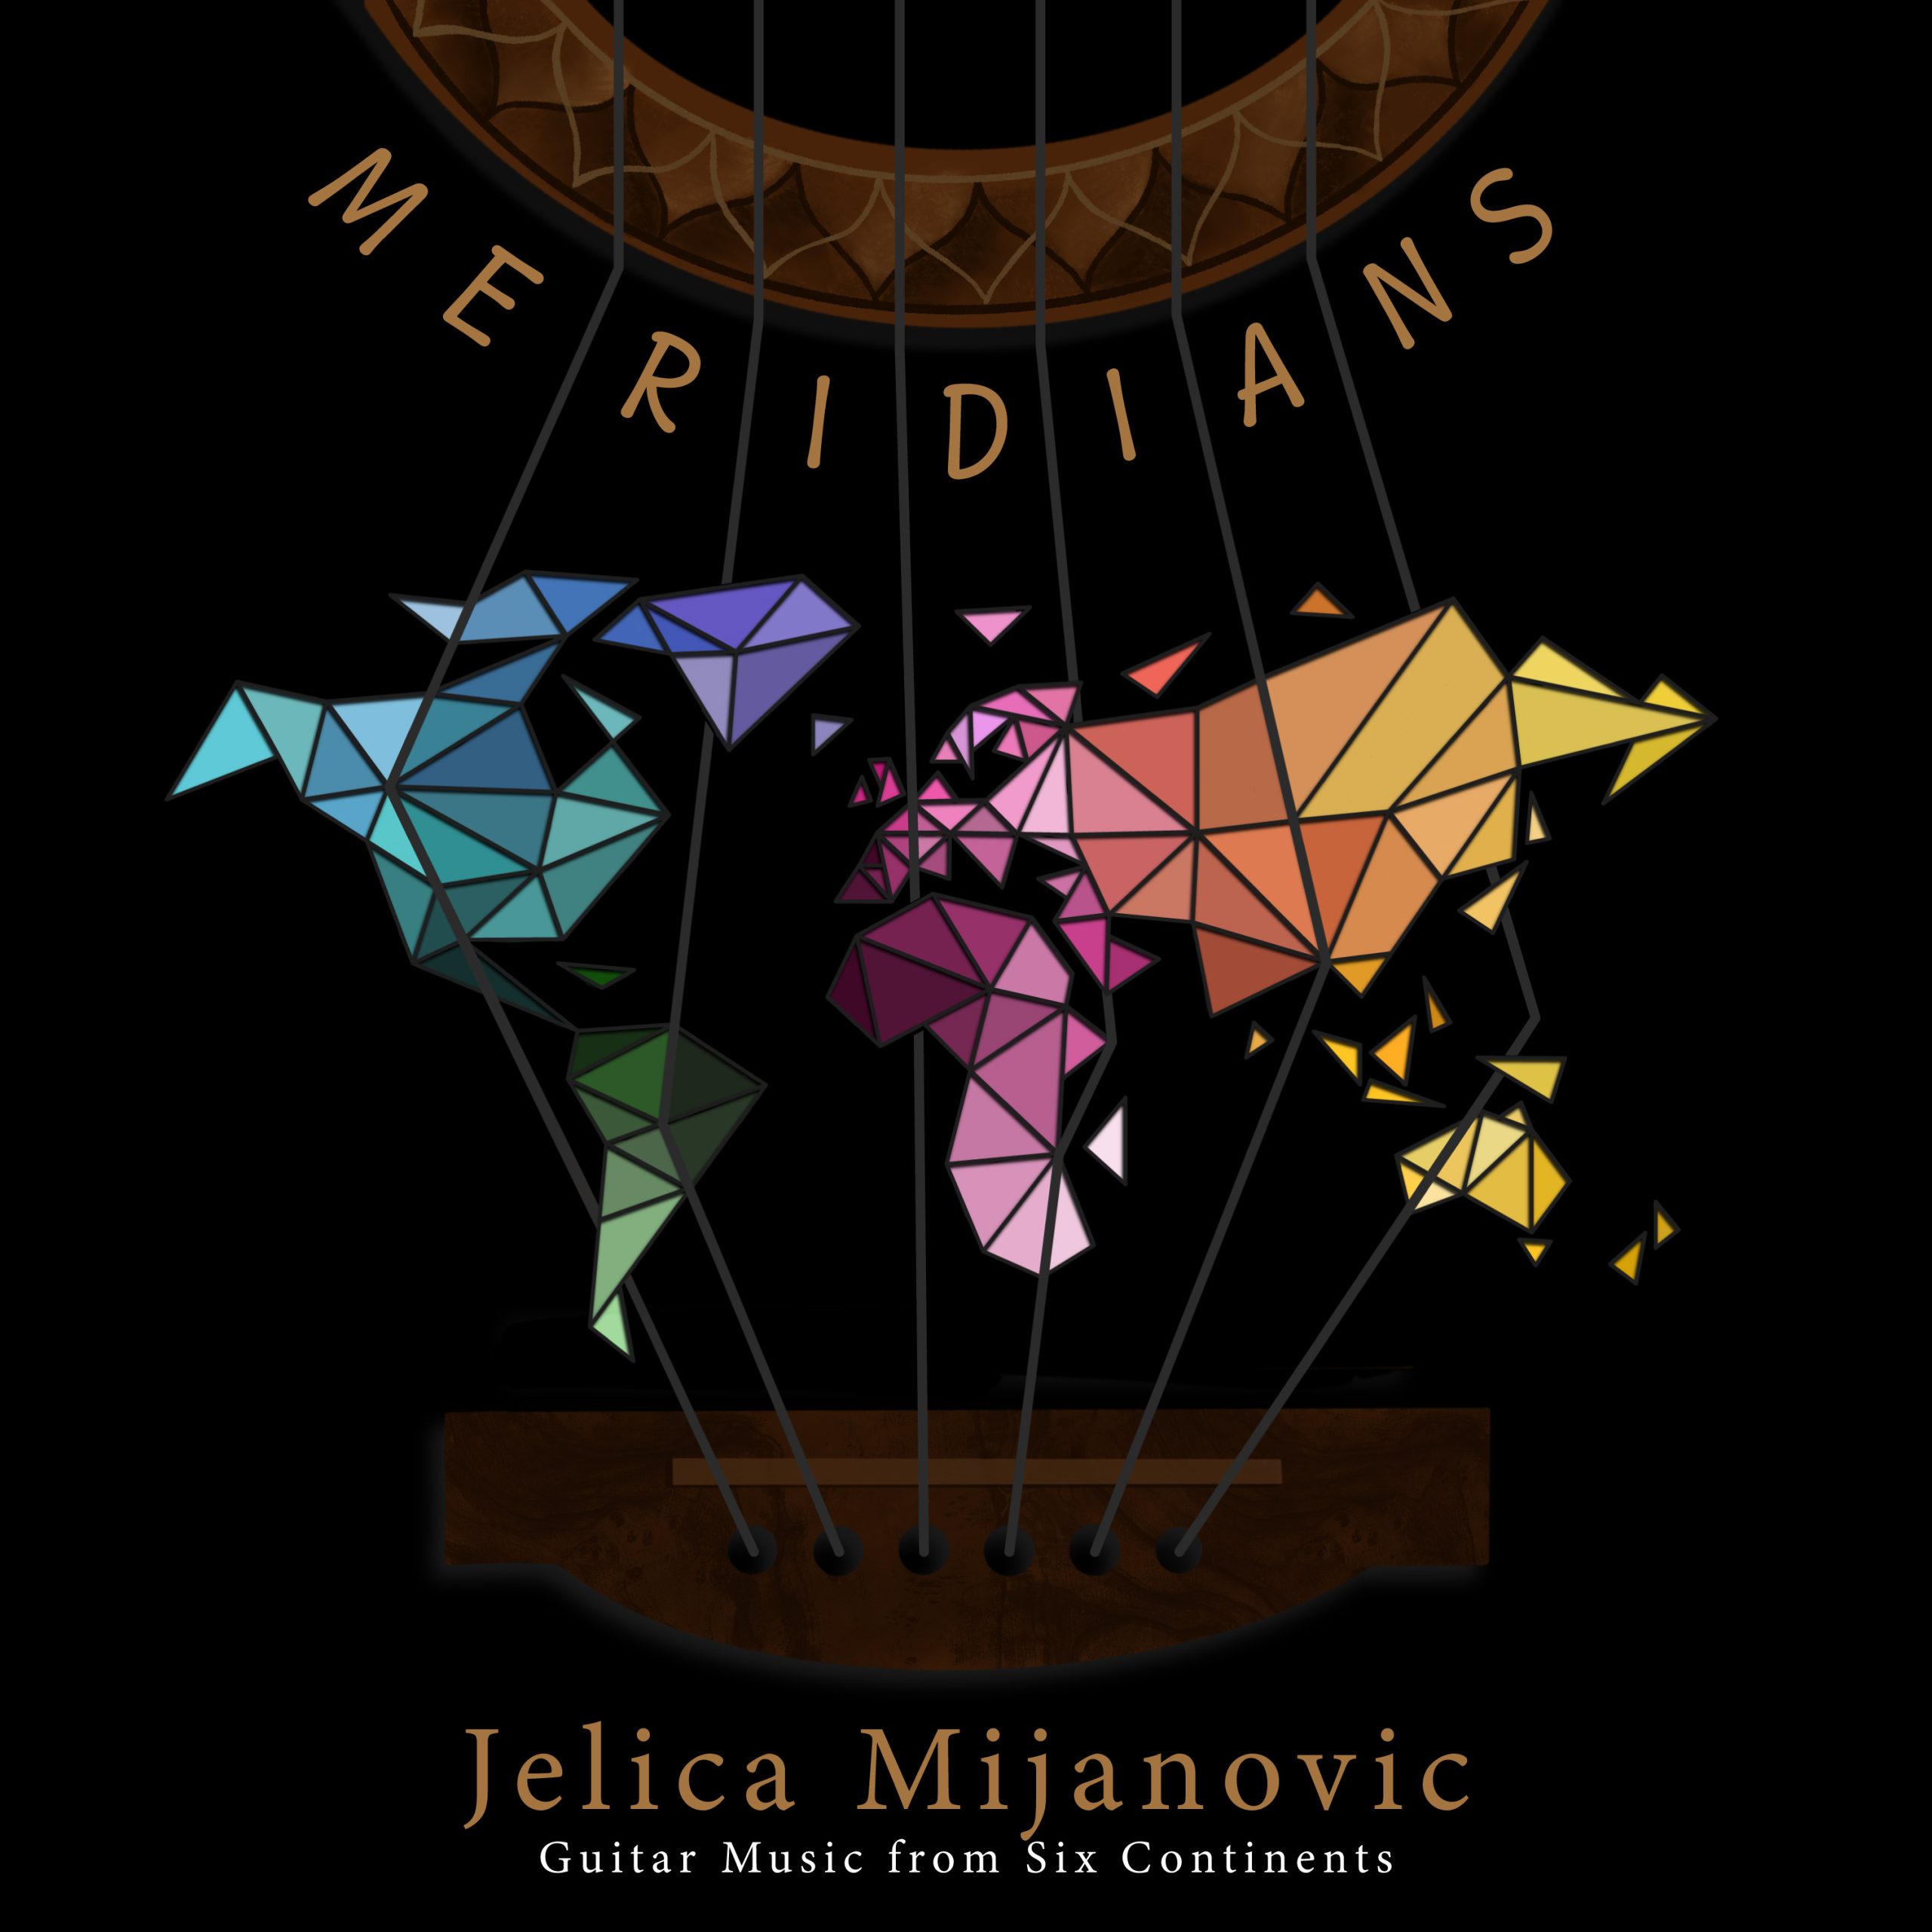 Album “Meridians” by Jelica Mijanovic